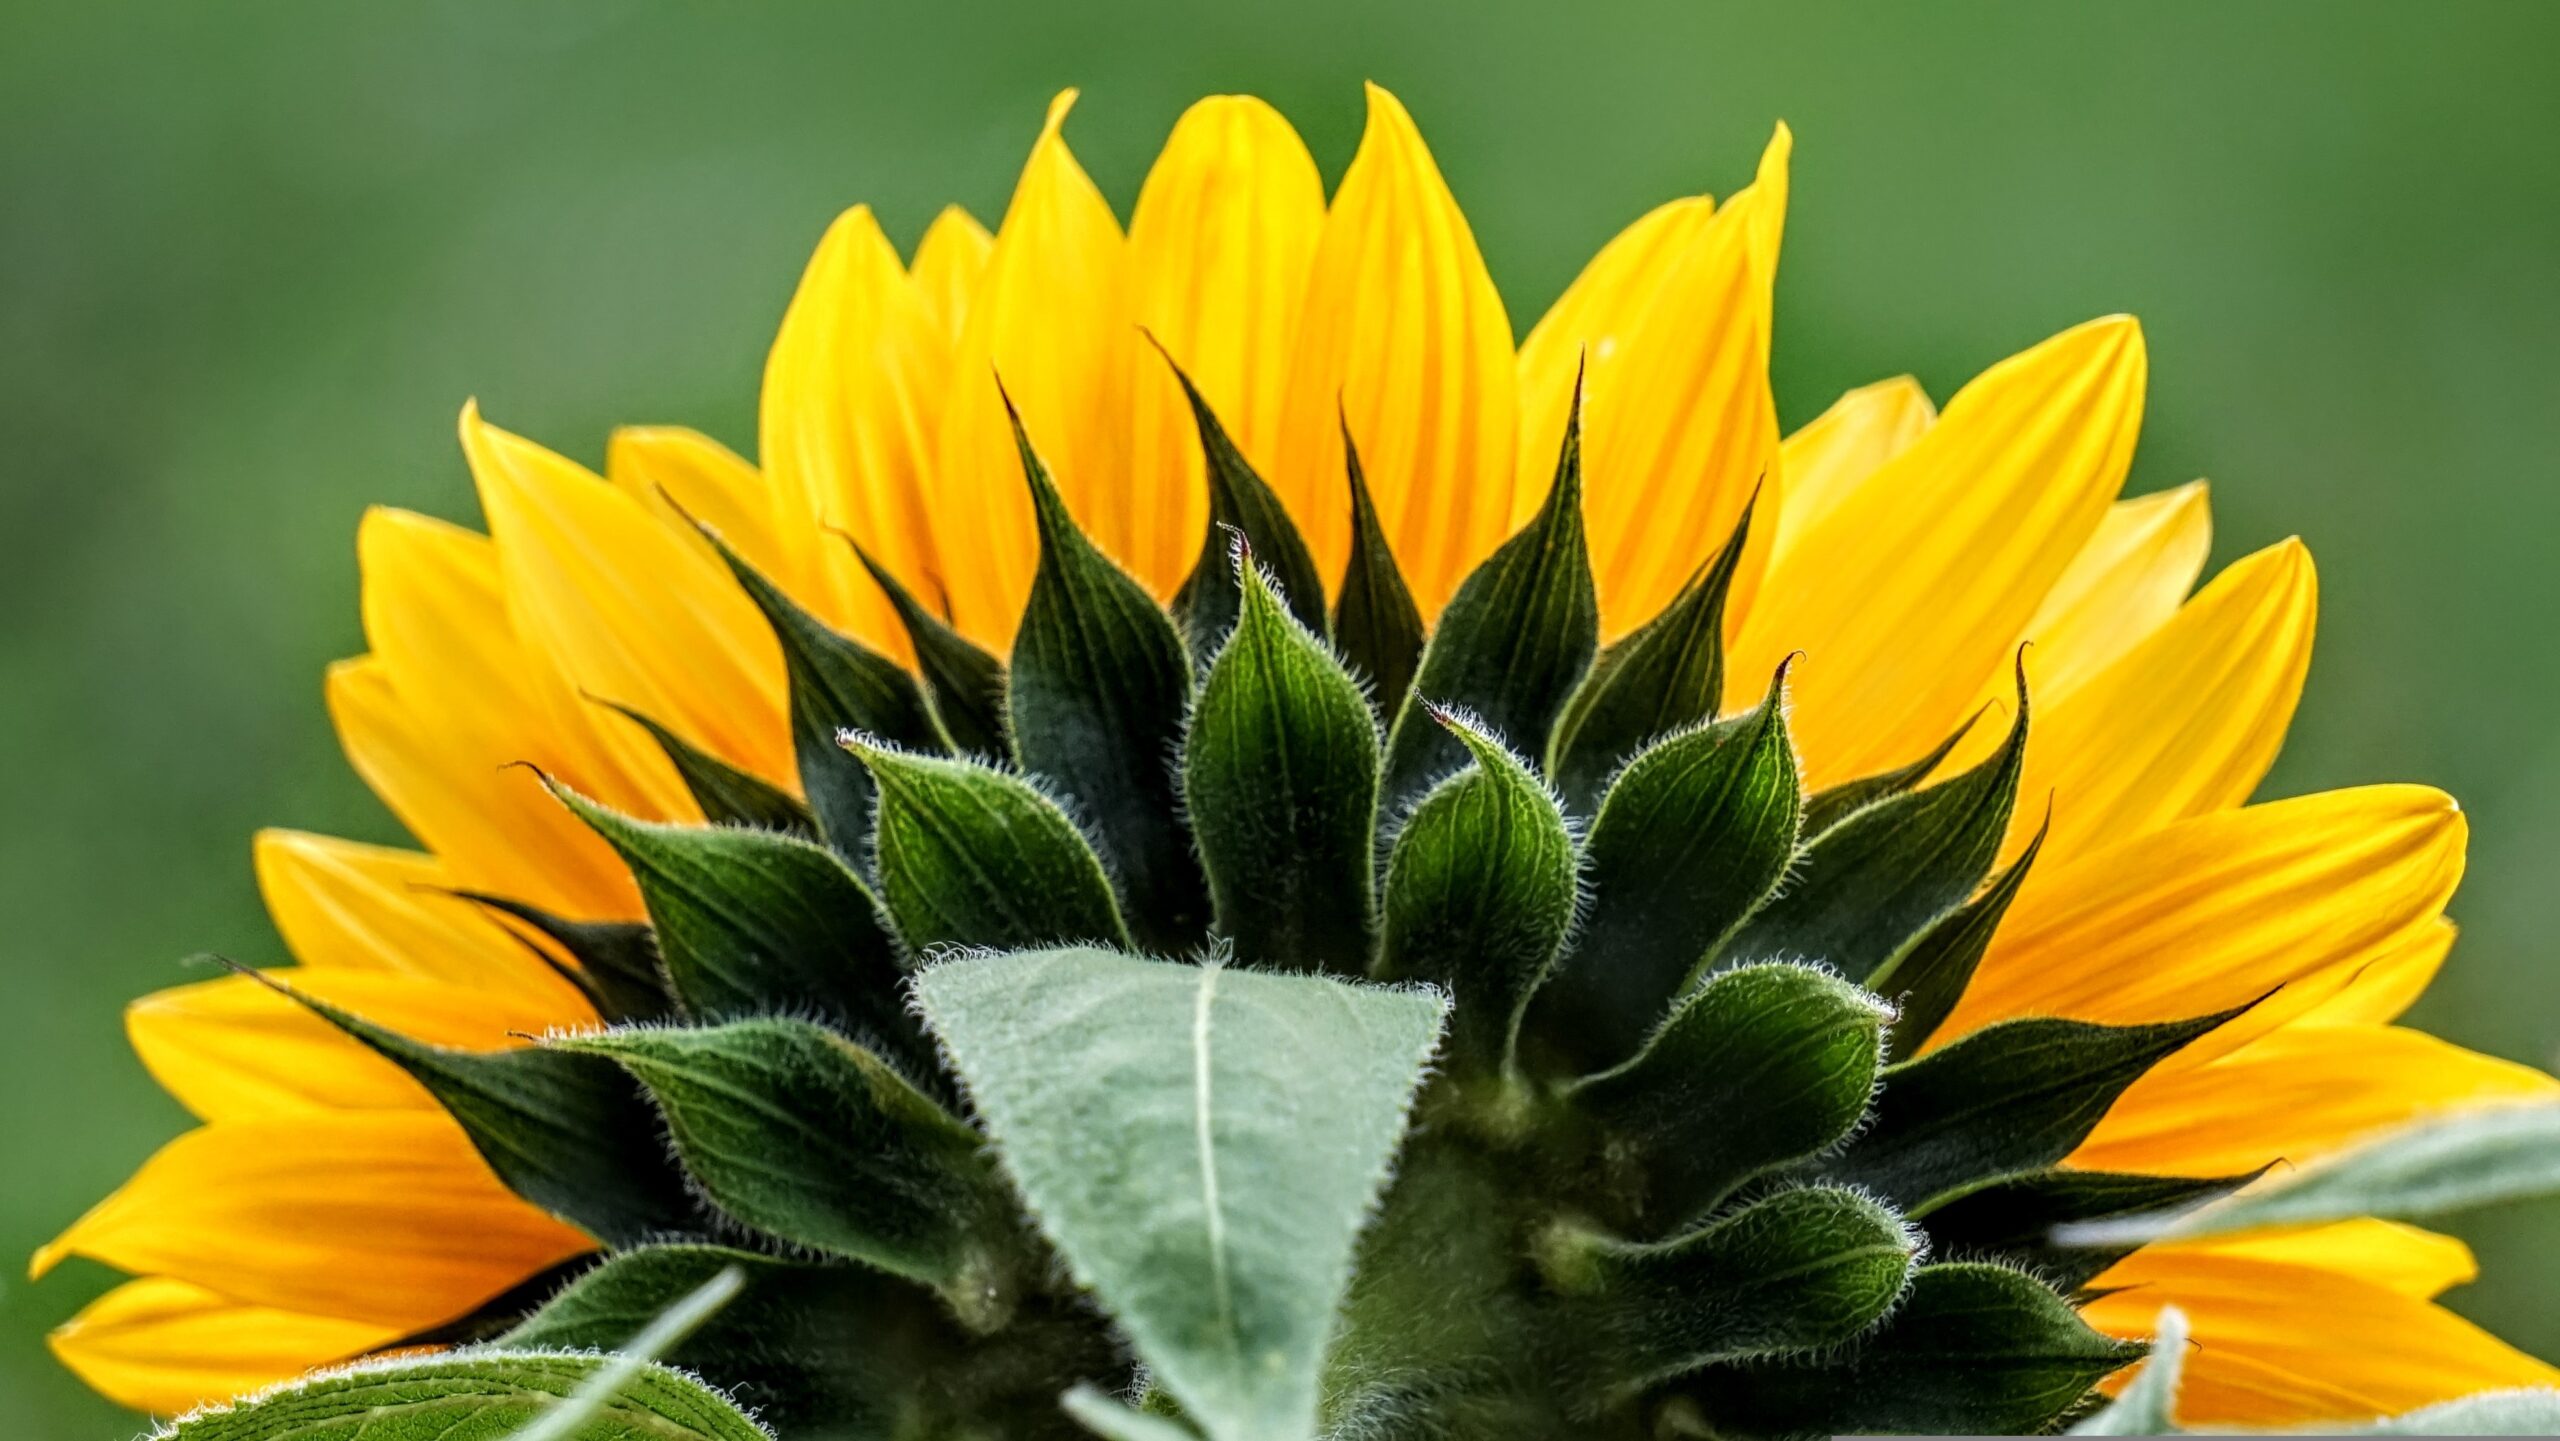 Strahlende Schönheit: Eine Sonnenblume im Licht der Sonne - Symptomatisch für unsere grüne Hoffnung auf eine blühende Zukunft.